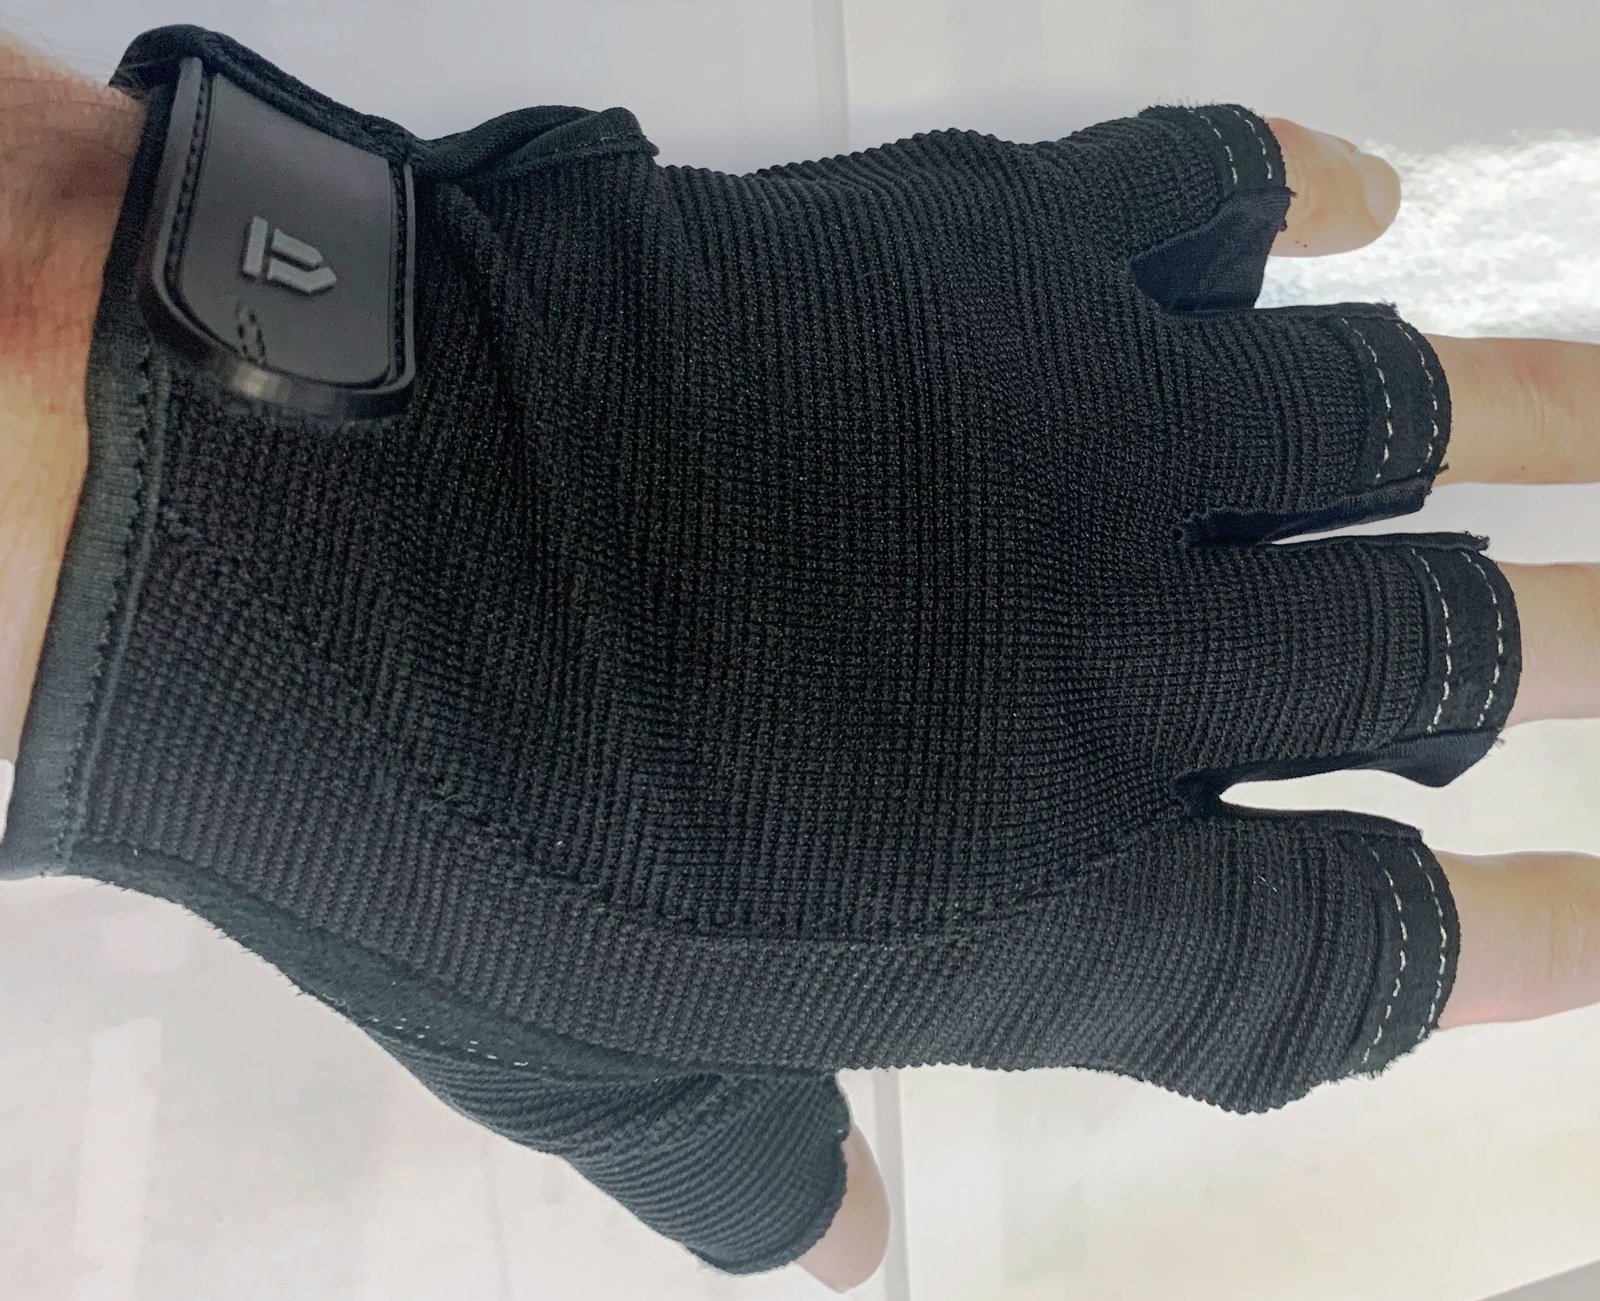 LiftTech SBG Unisex Glove